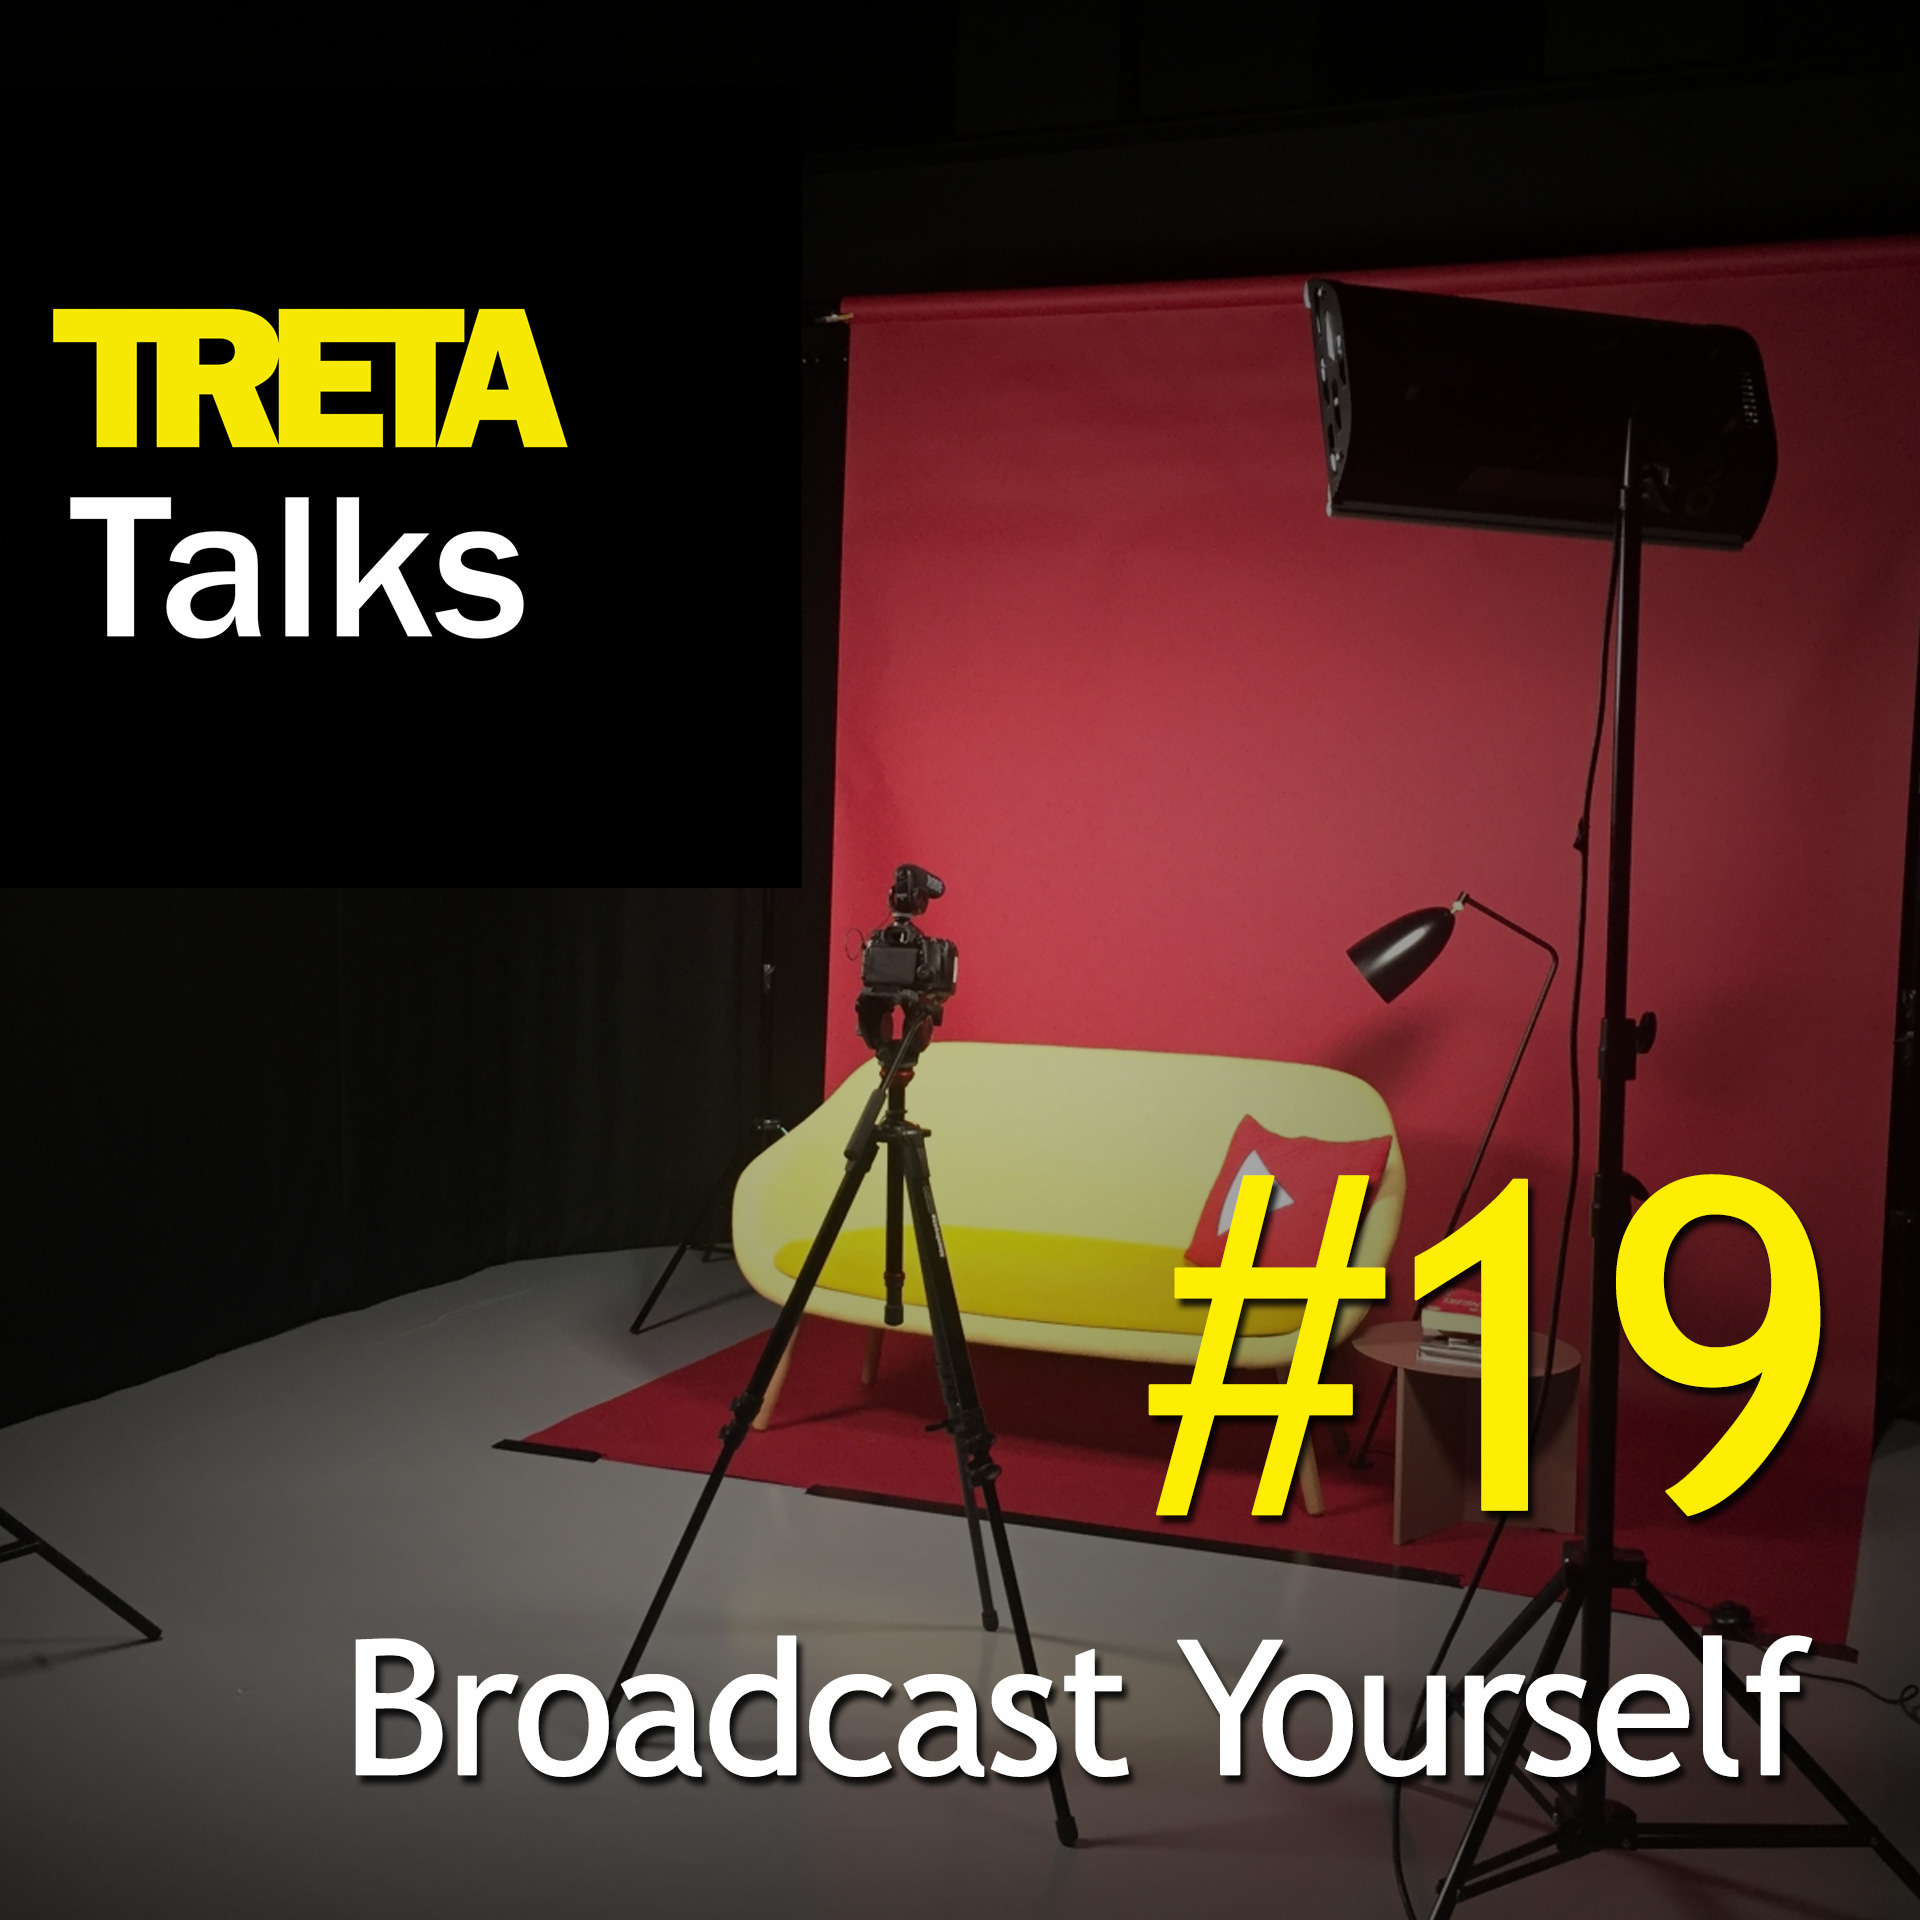 treta-talks-cover19